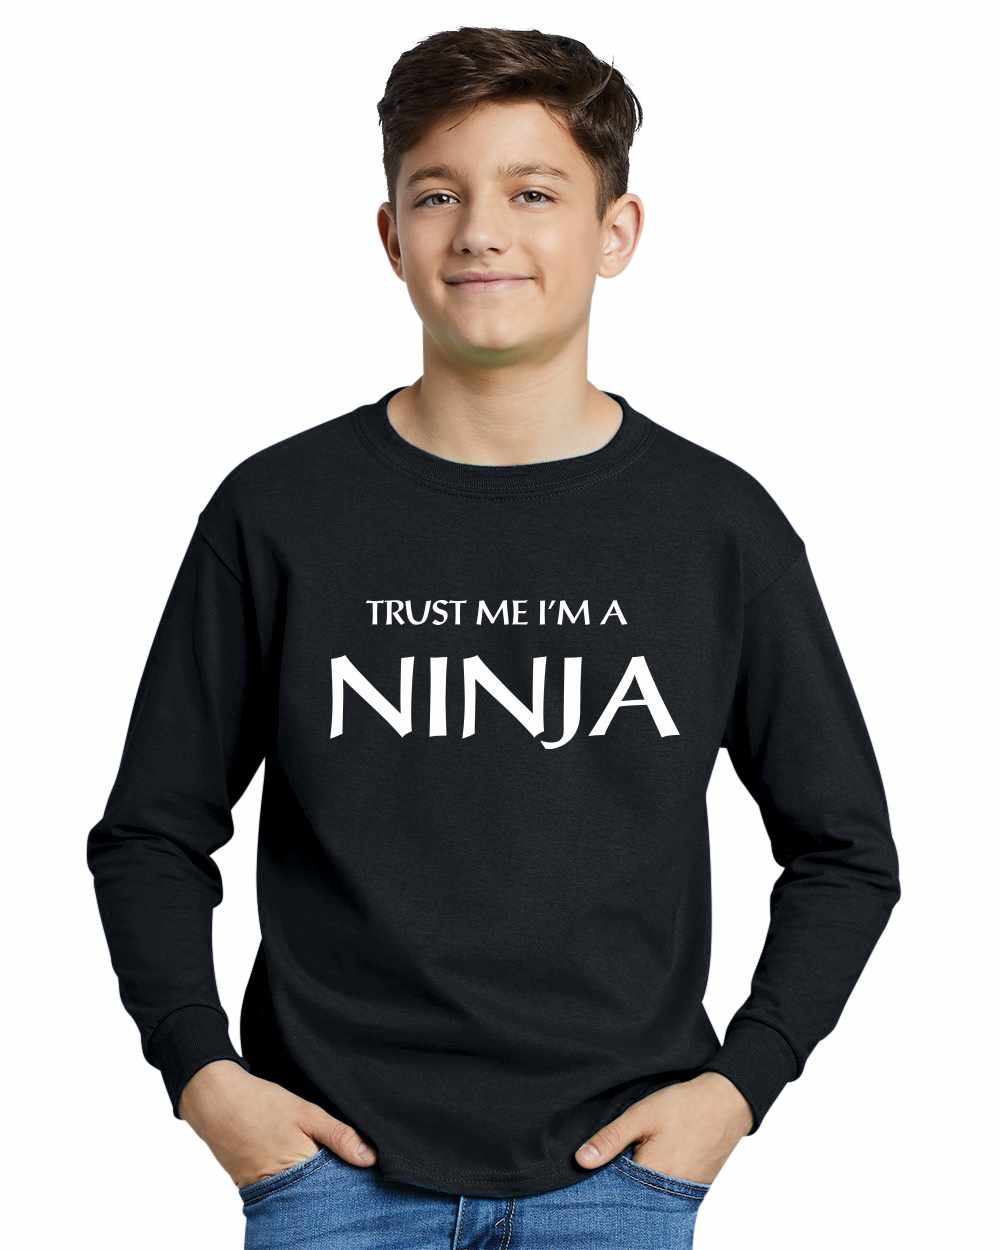 Trust Me I'm a NINJA on Youth Long Sleeve Shirt (#774-203)